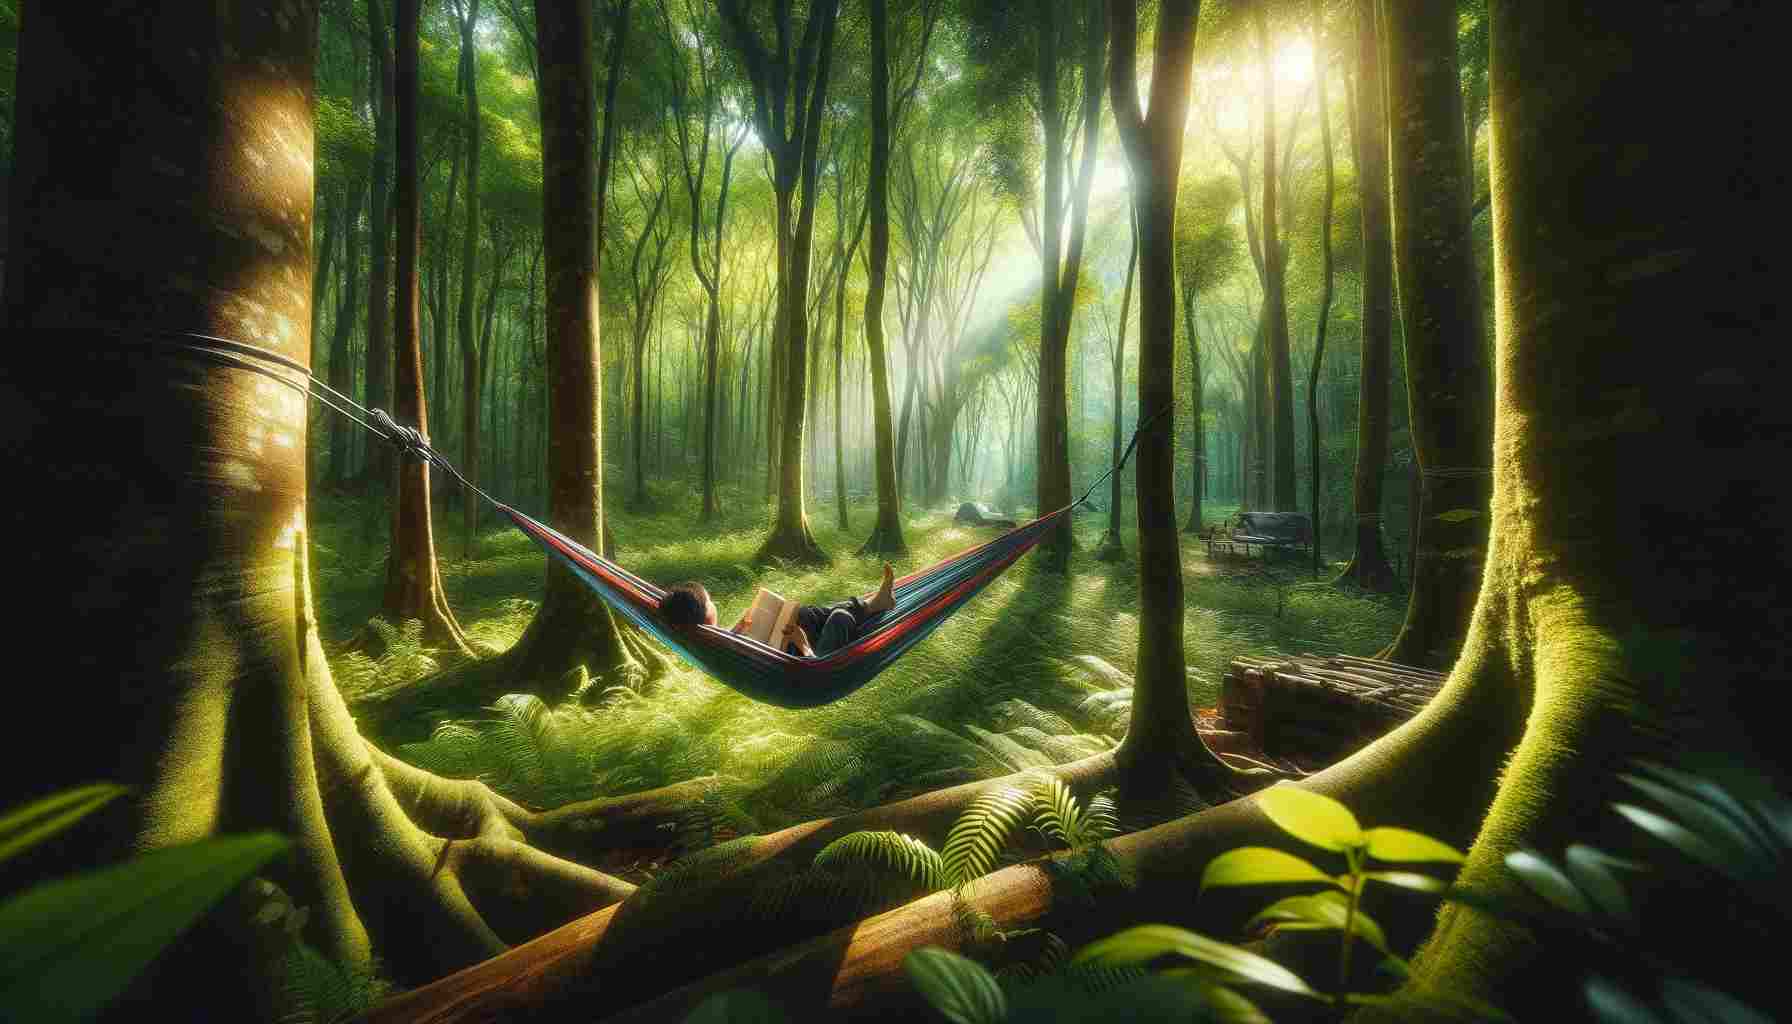 Egy nyugodt és realisztikus jelenet egy személyről, aki egy függőágyban pihen két fa közé kötve egy buja erdőben. Az erdő sűrű, különböző árnyalatokkal